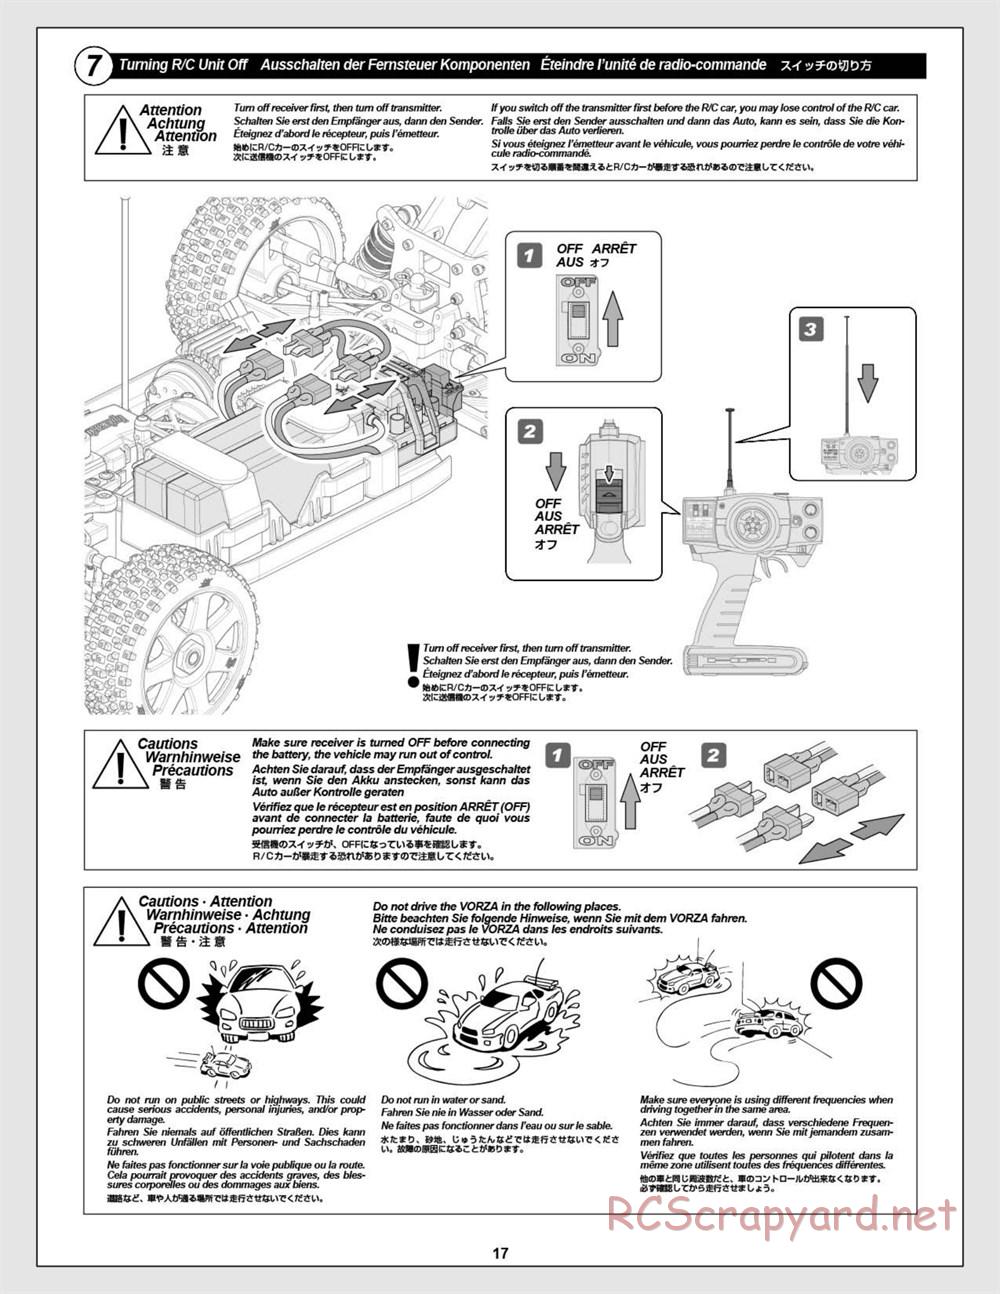 HPI - Vorza Flux HP - Manual - Page 17